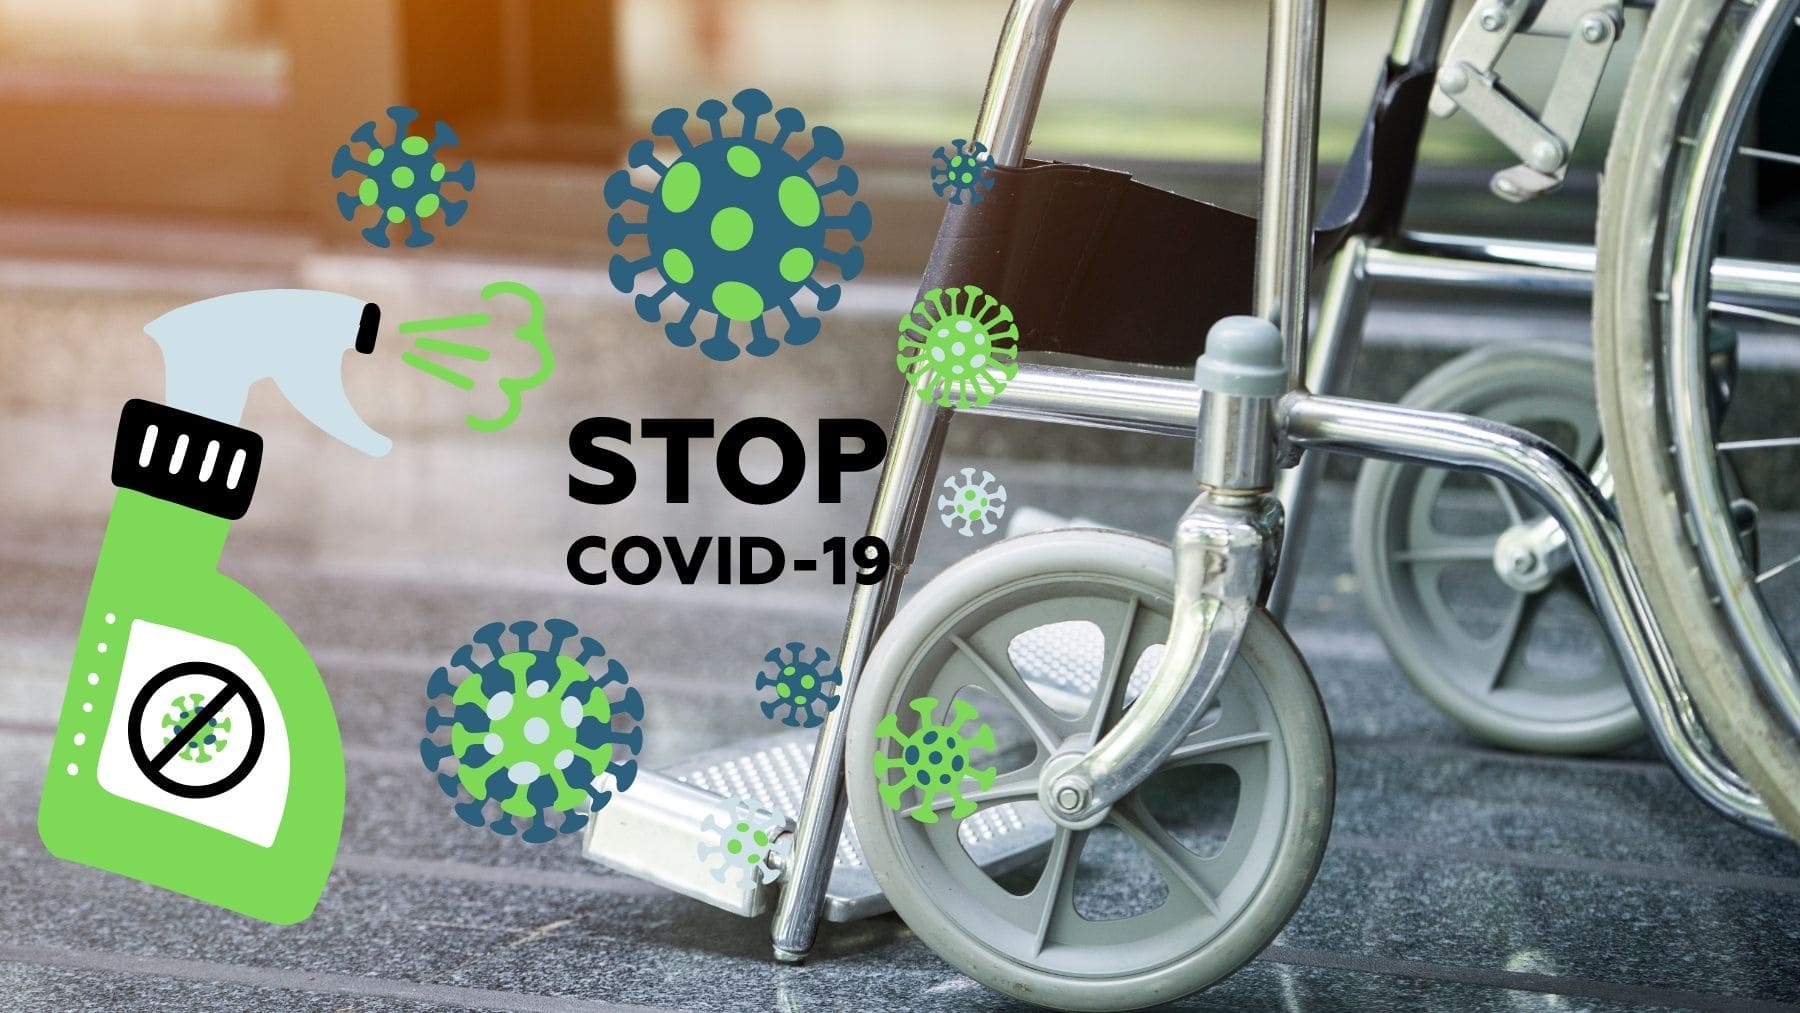 Desinfectar silla de ruedas Covid-19